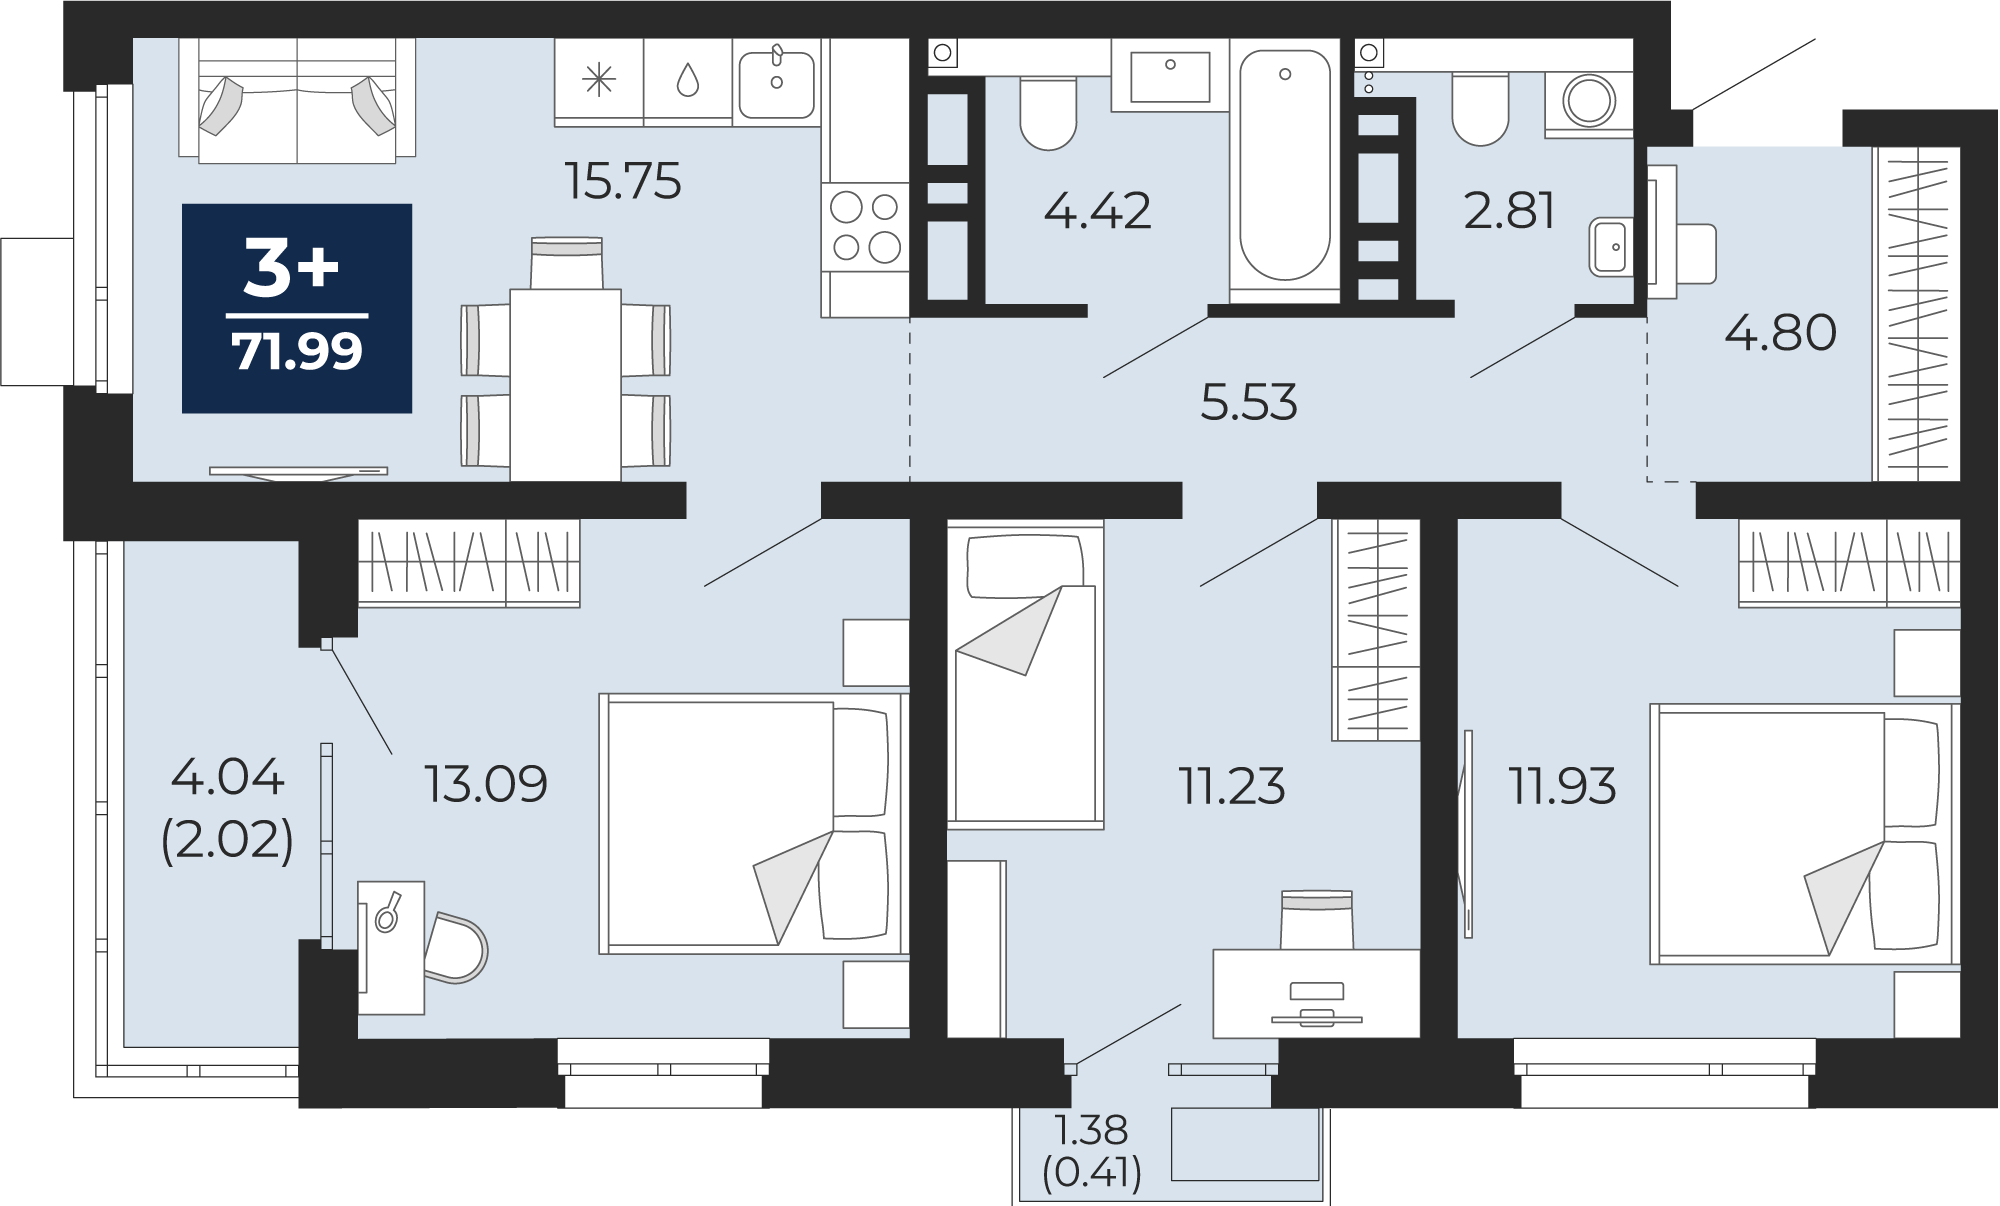 Квартира № 344, 3-комнатная, 71.99 кв. м, 4 этаж